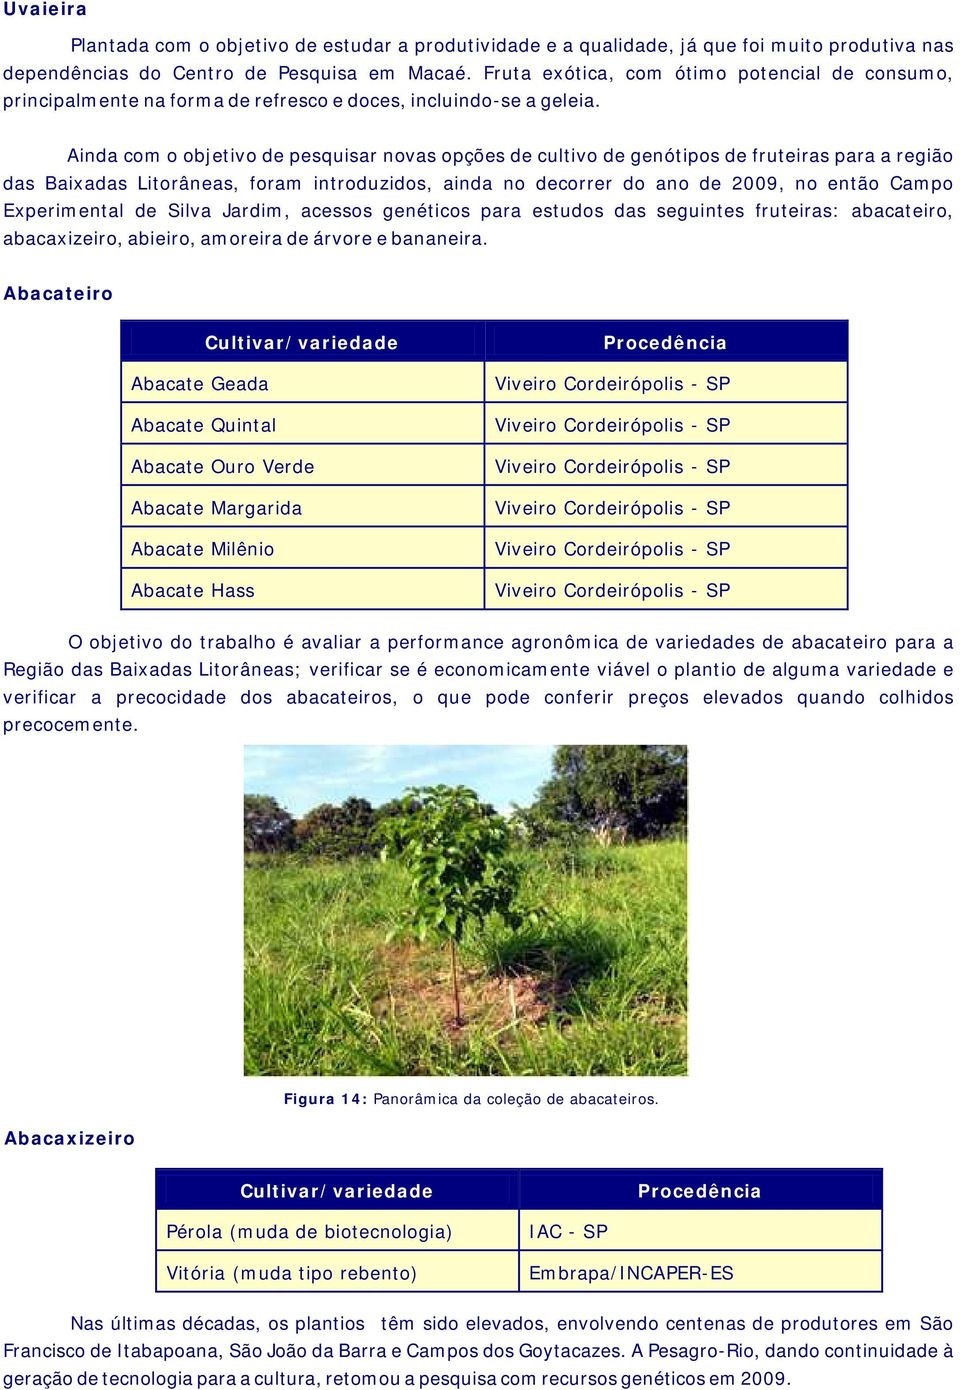 Ainda com o objetivo de pesquisar novas opções de cultivo de genótipos de fruteiras para a região das Baixadas Litorâneas, foram introduzidos, ainda no decorrer do ano de 2009, no então Campo